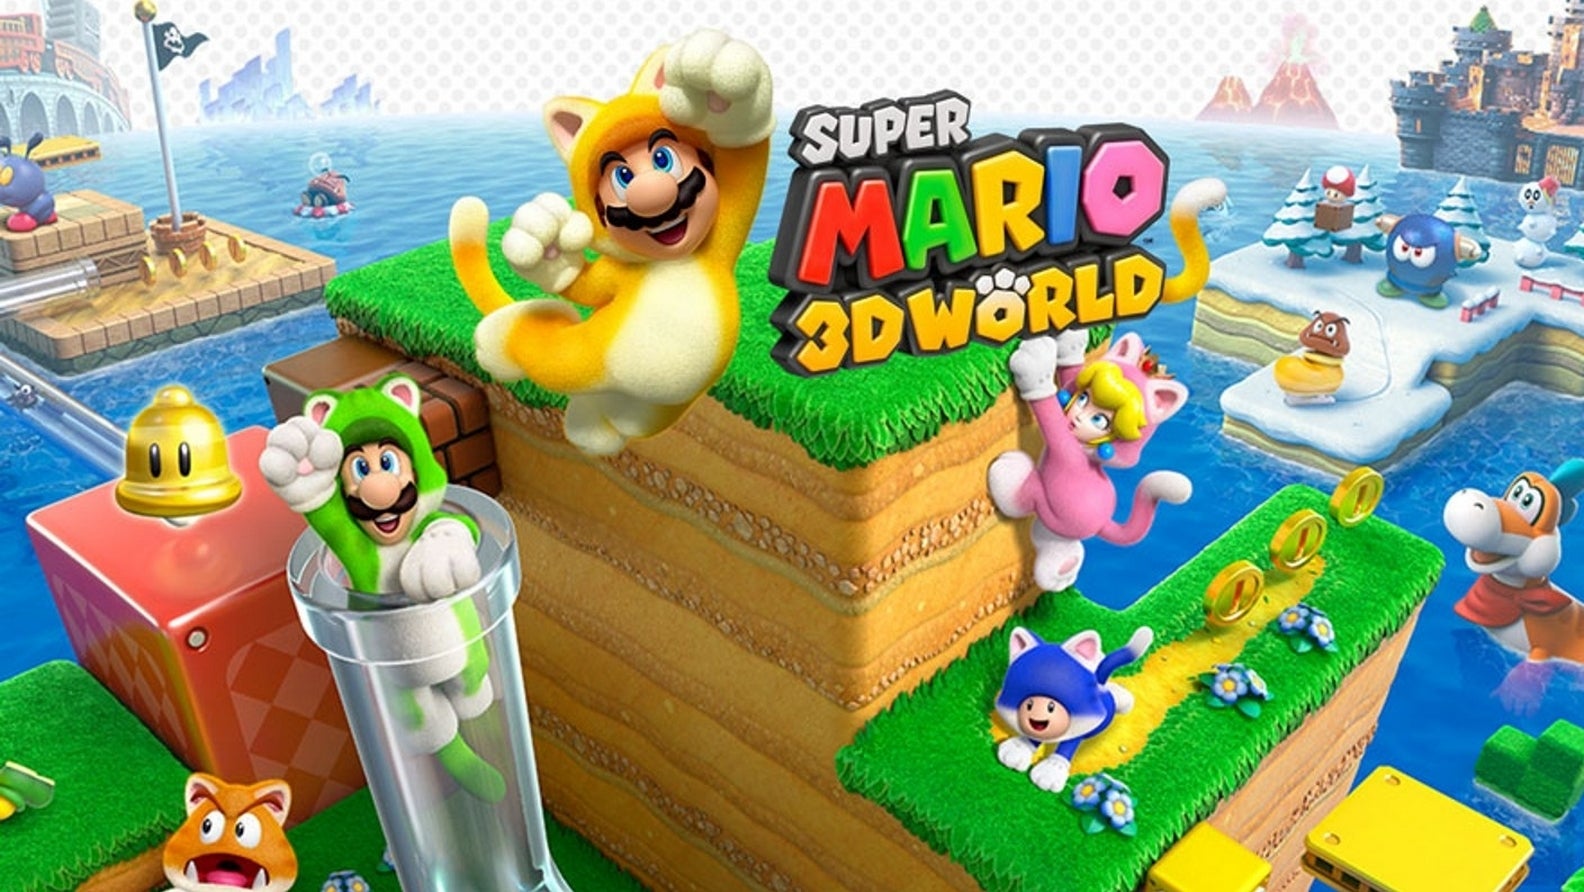 Bilder zu Bericht: Metroid Prime Trilogy und Super Mario 3D World für Switch beim Händler Best Buy aufgetaucht